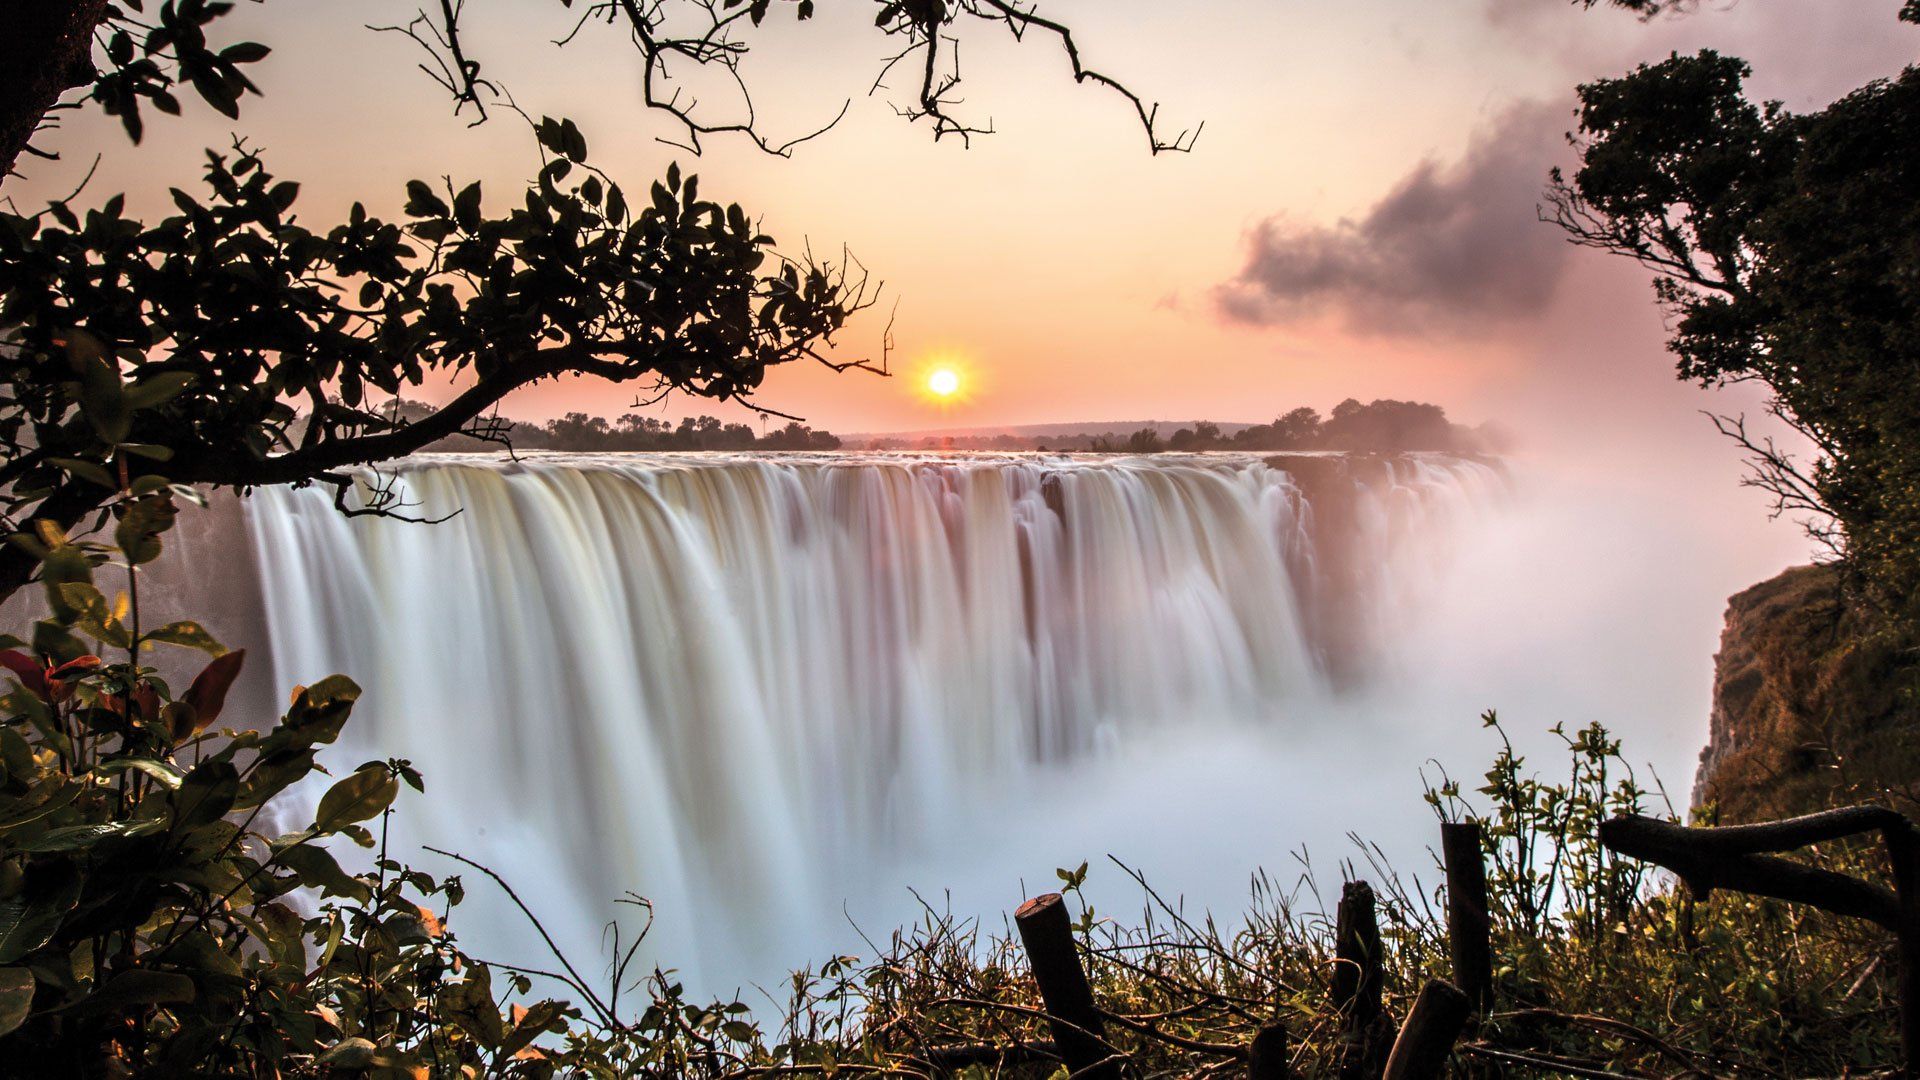 - Victoria Falls, Zambia -